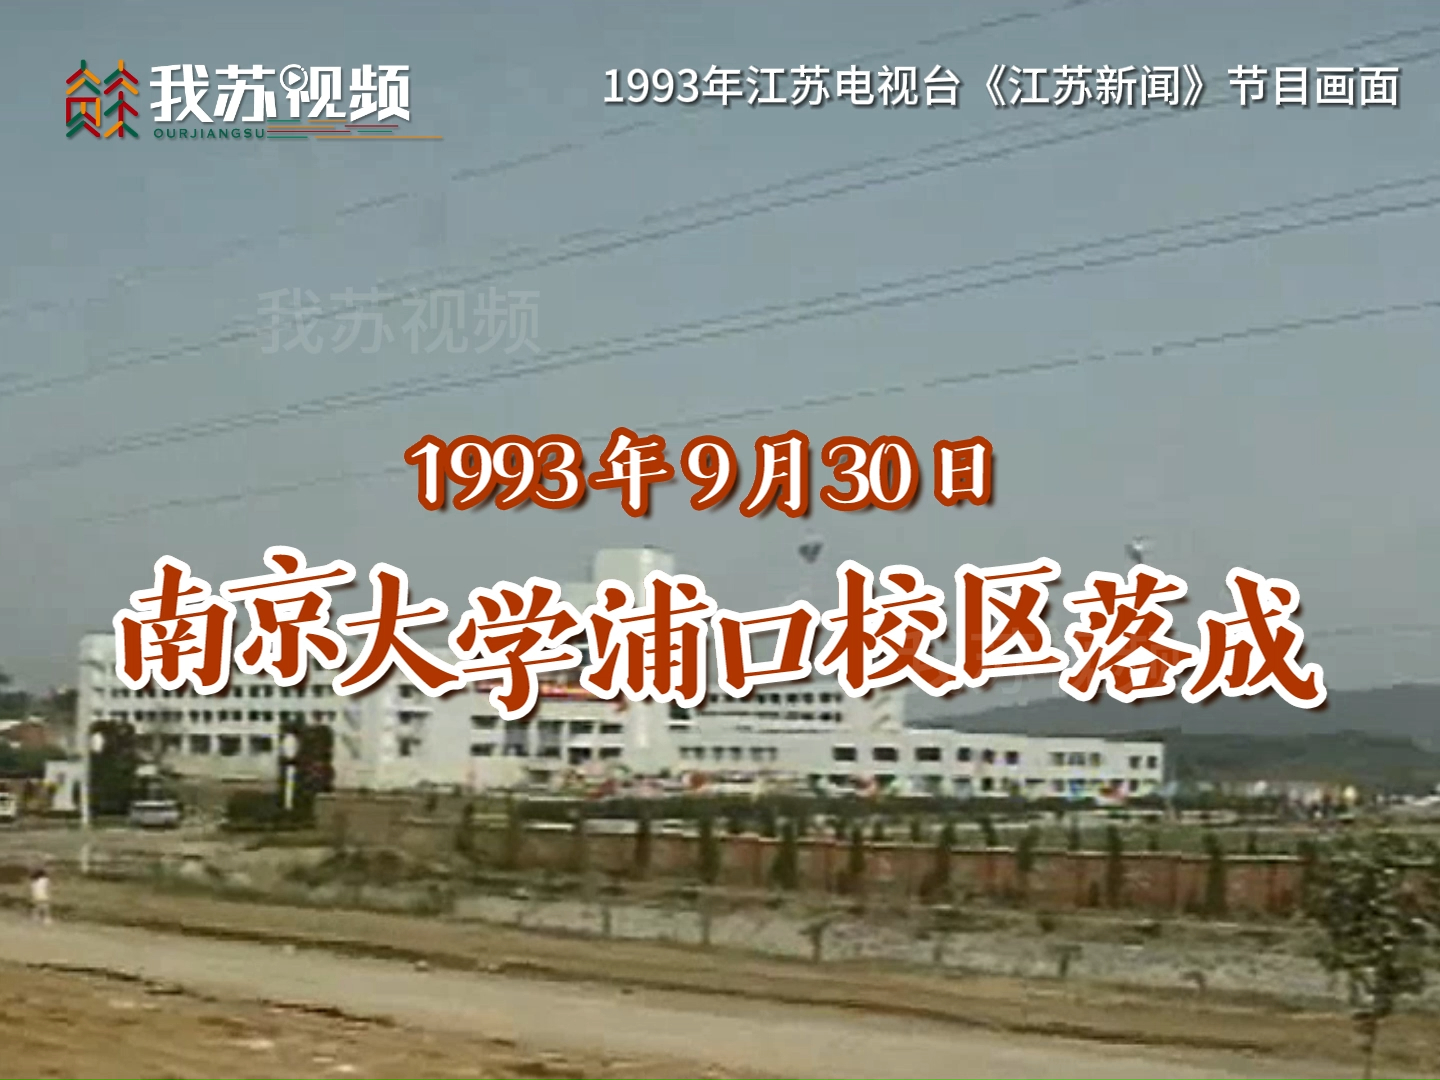 1993年9月30日，南大浦口校区落成暨新生开学典礼。